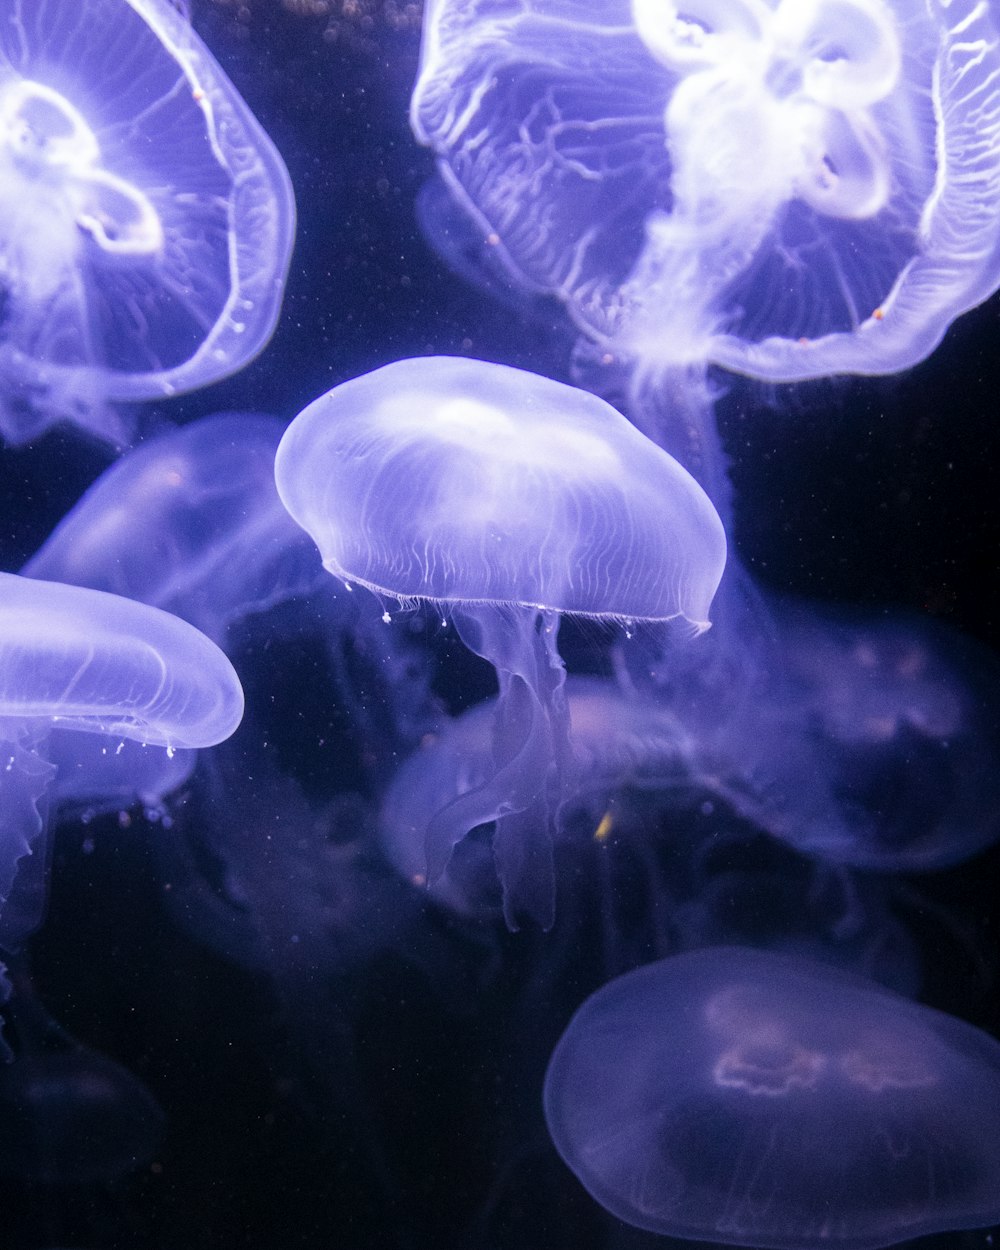 Un groupe de méduses nageant dans un aquarium